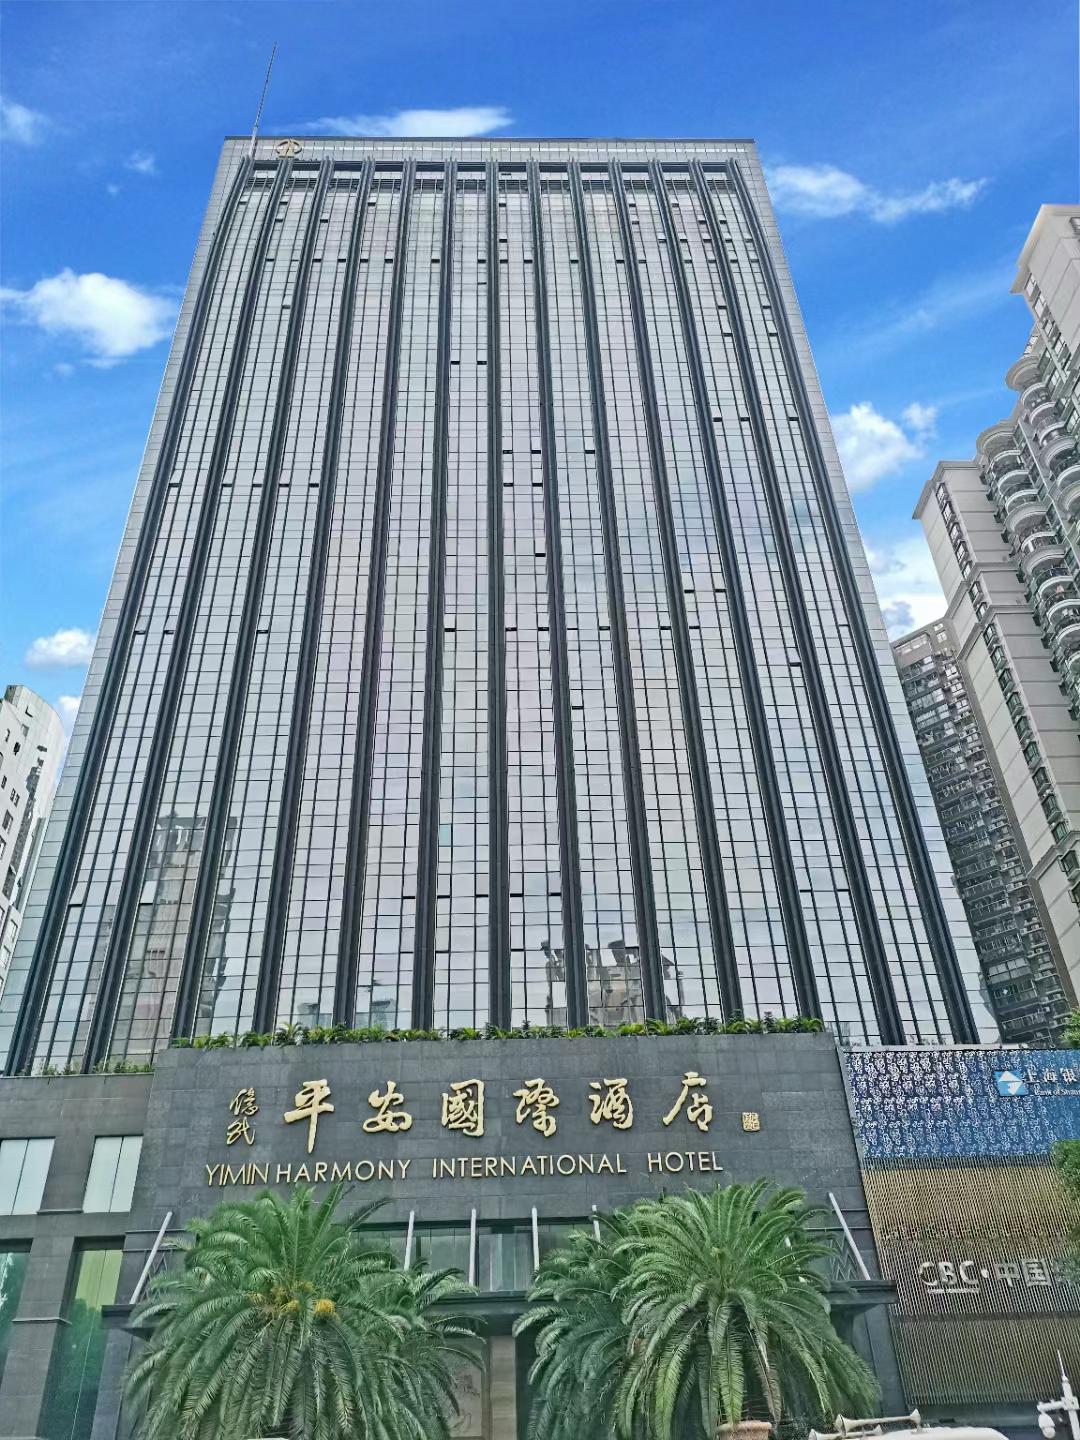 深圳五星级酒店最大容纳200人的会议场地|深圳亿民平安国际酒店的价格与联系方式